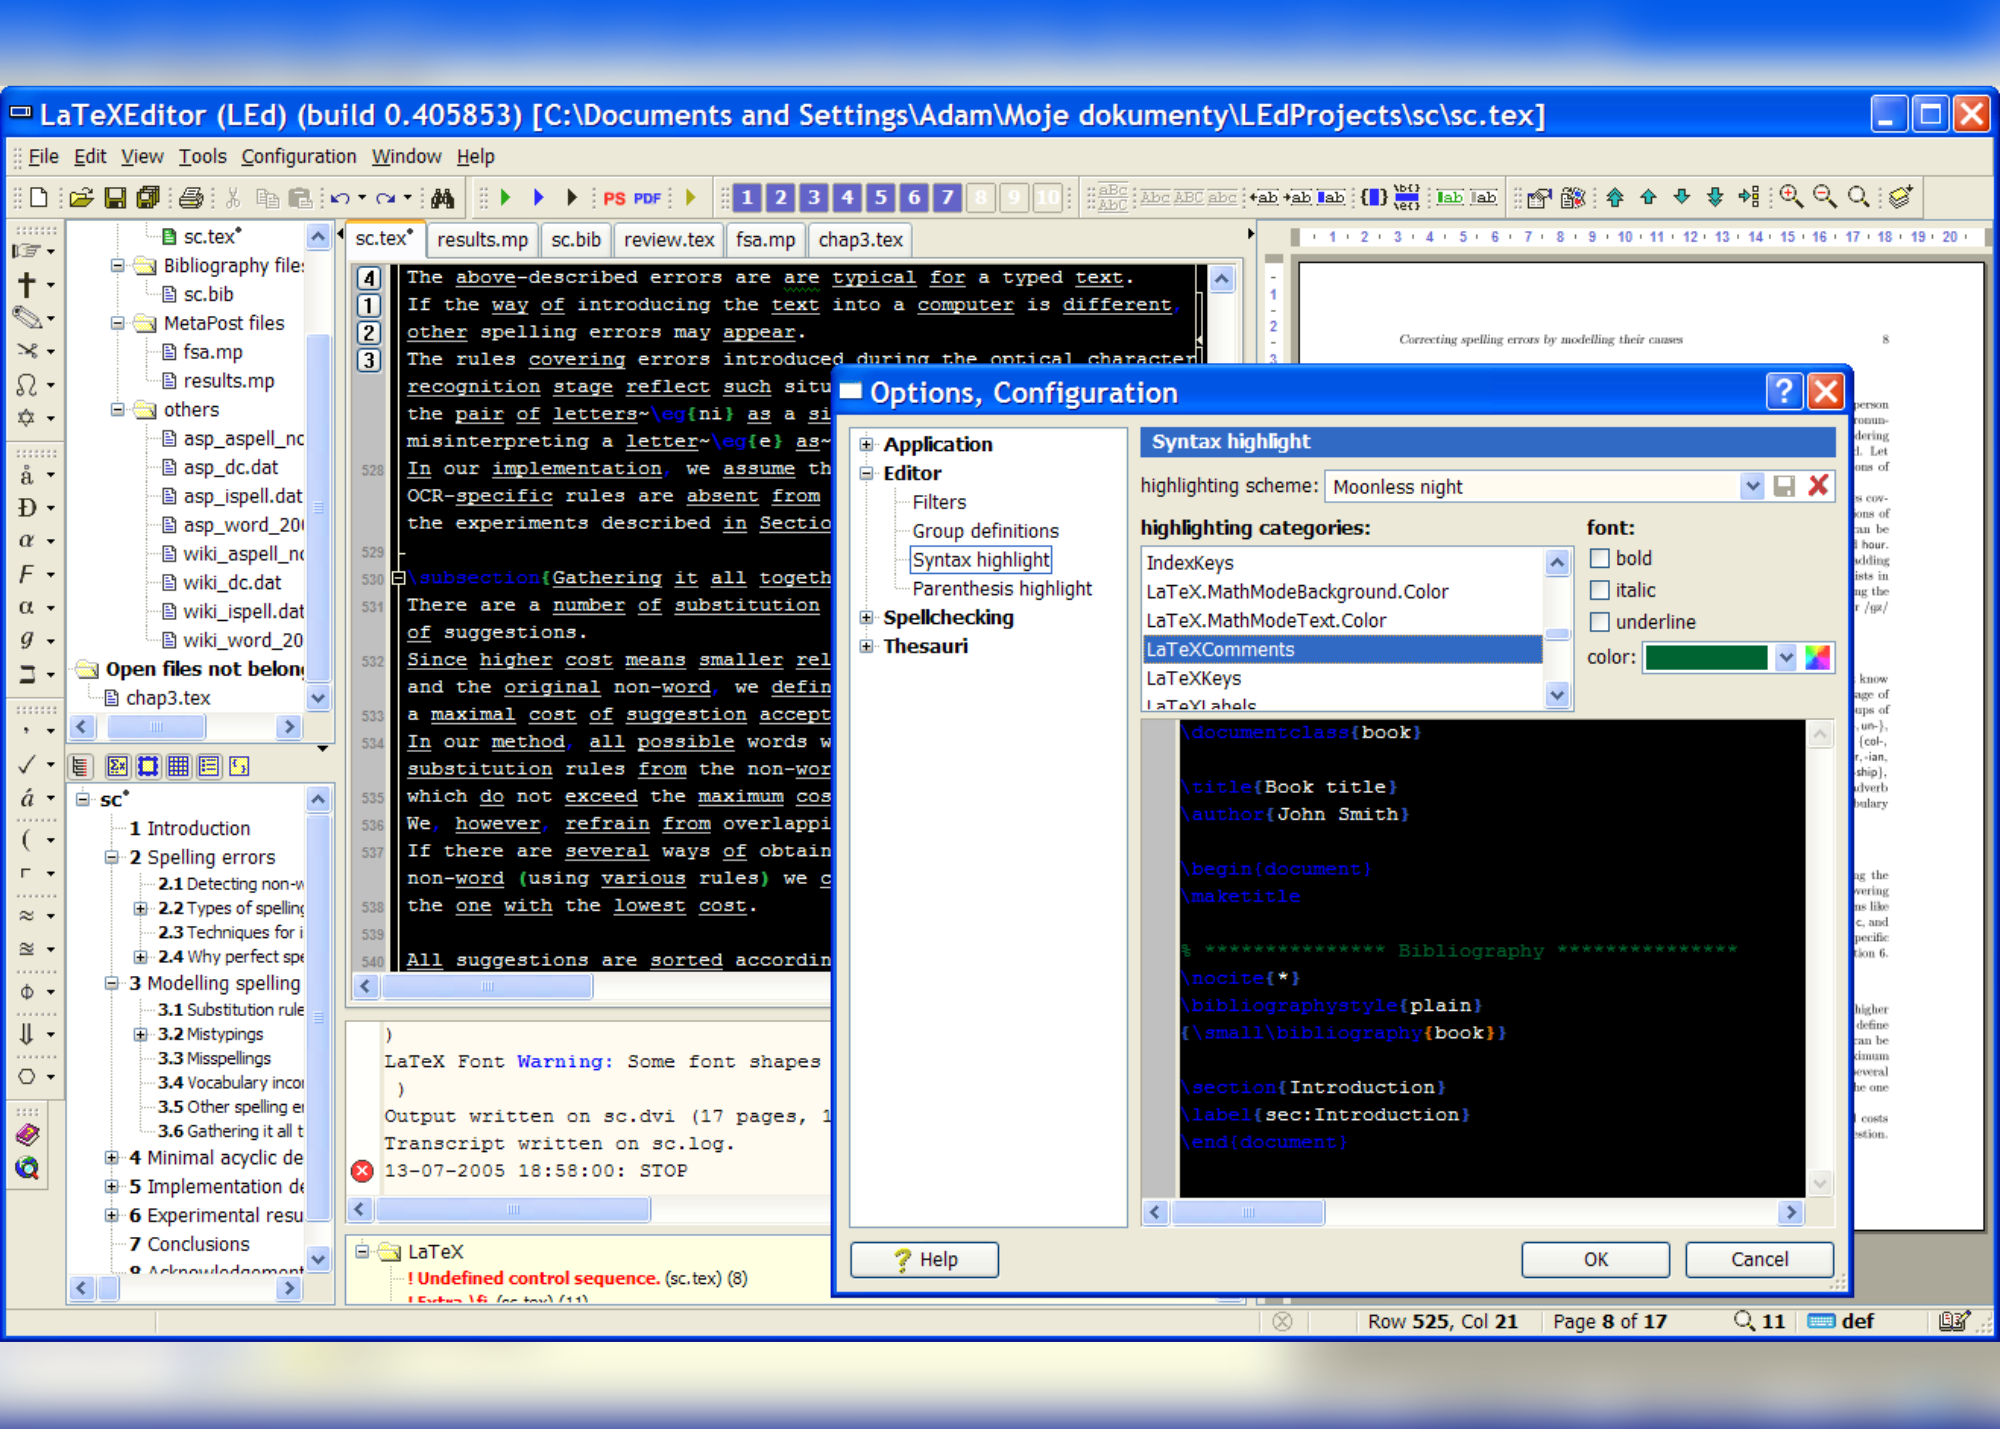 A screenshot showing syntax highlight part 1